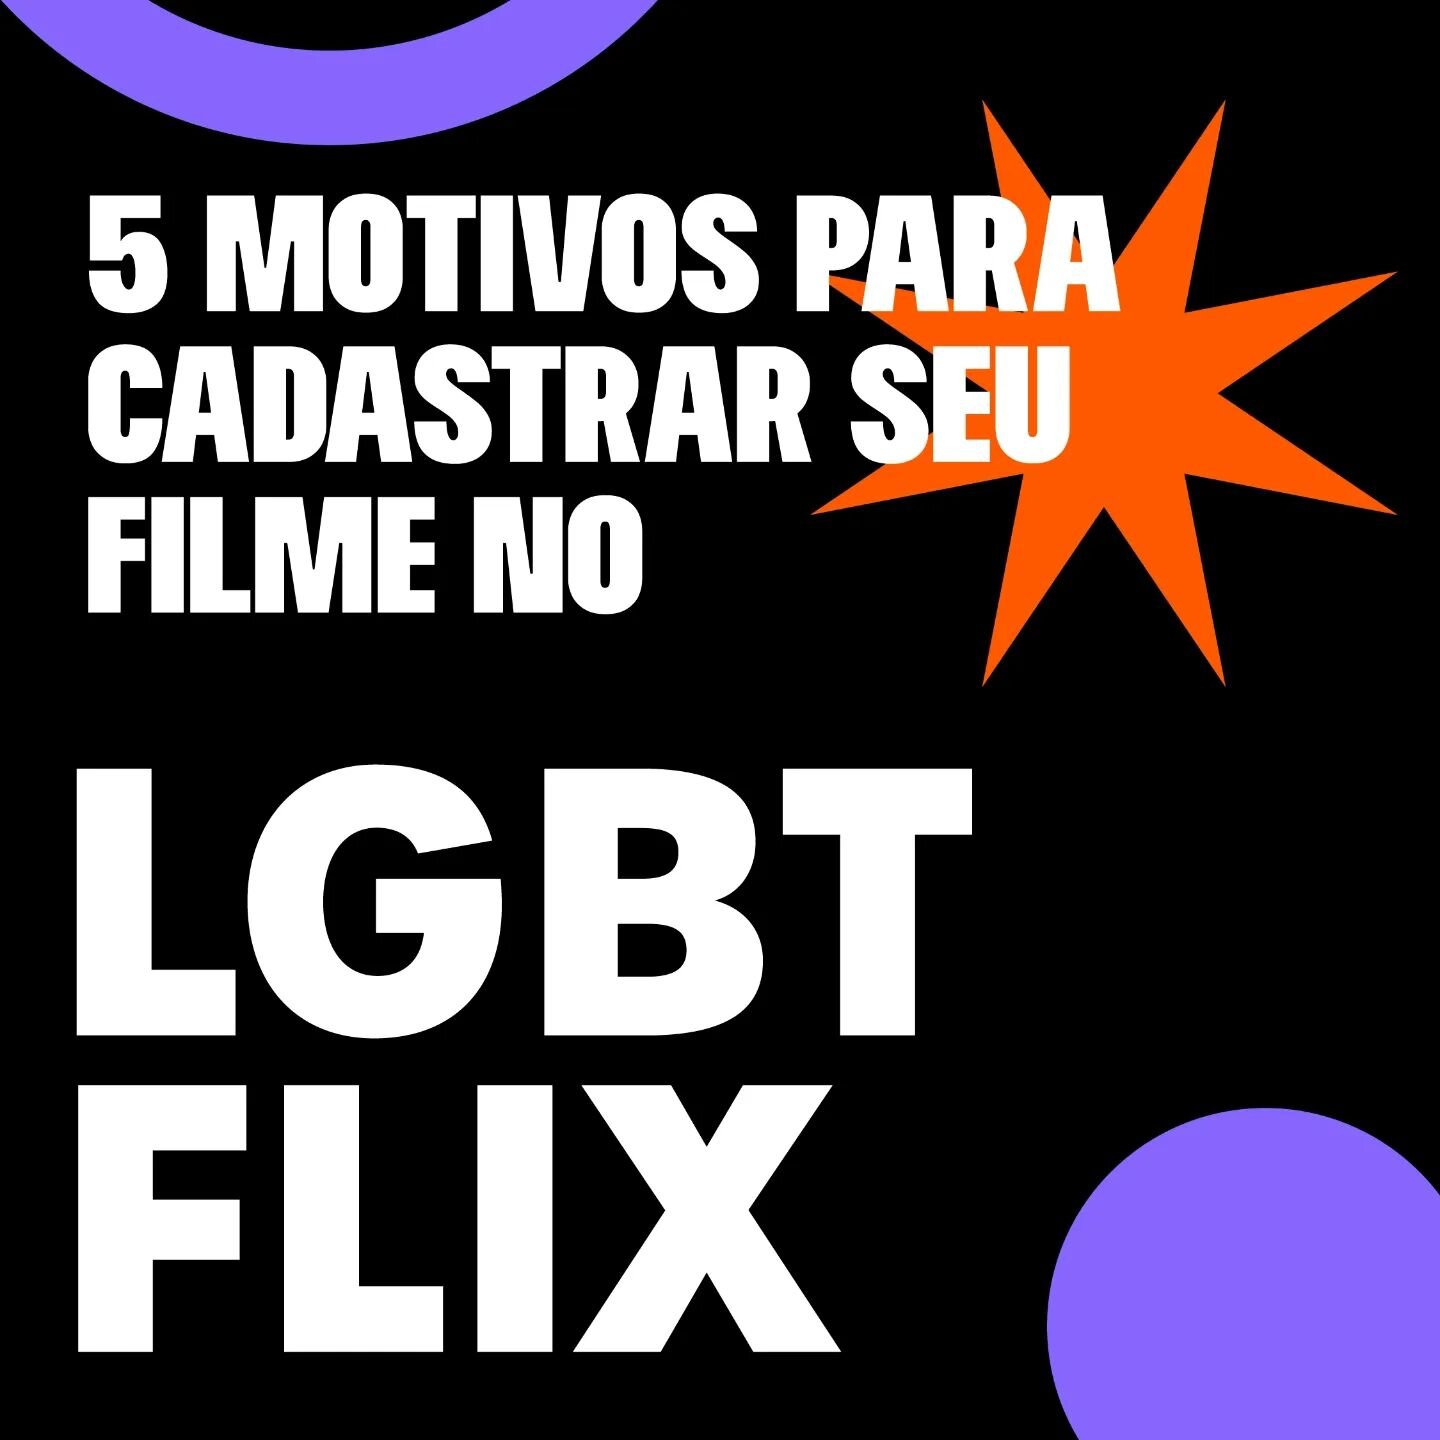 Listamos 5 motivos para voc&ecirc; cadastrar seu filme no LGBTFLIX hoje! 😉

Que a plataforma de streaming favorita do vale LGBT+ est&aacute; voltando voc&ecirc;s j&aacute; sabem! 
O que talvez ainda seja novidade, &eacute; que o nosso cat&aacute;log